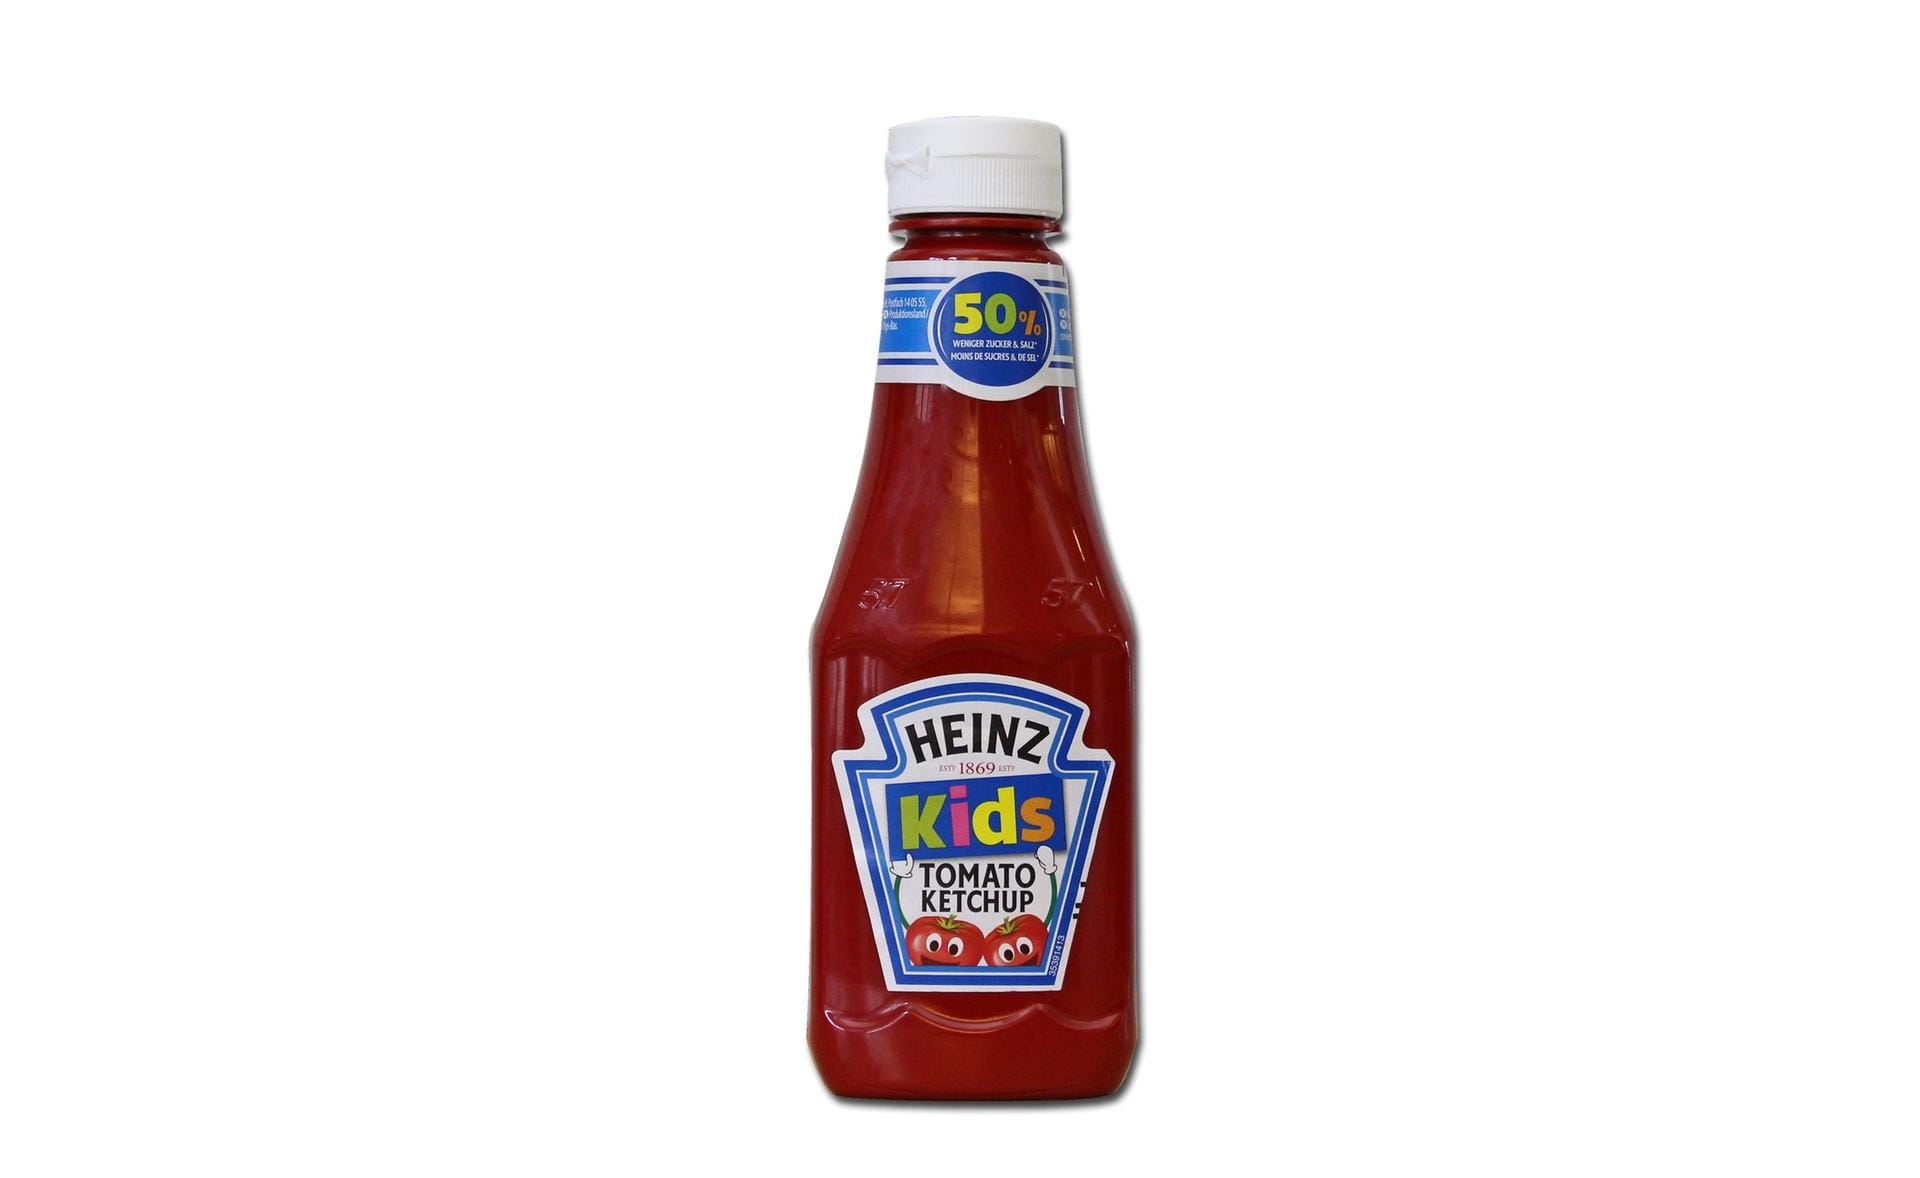 "Kids Tomato Ketchup" von Heinz: Diese Variante kostet bis zu 40 Prozent mehr als das Produkt für Erwachsene – obwohl der Ketchup exakt der gleiche ist. Foodwatch ist sicher: Hier werden Eltern abgezockt.